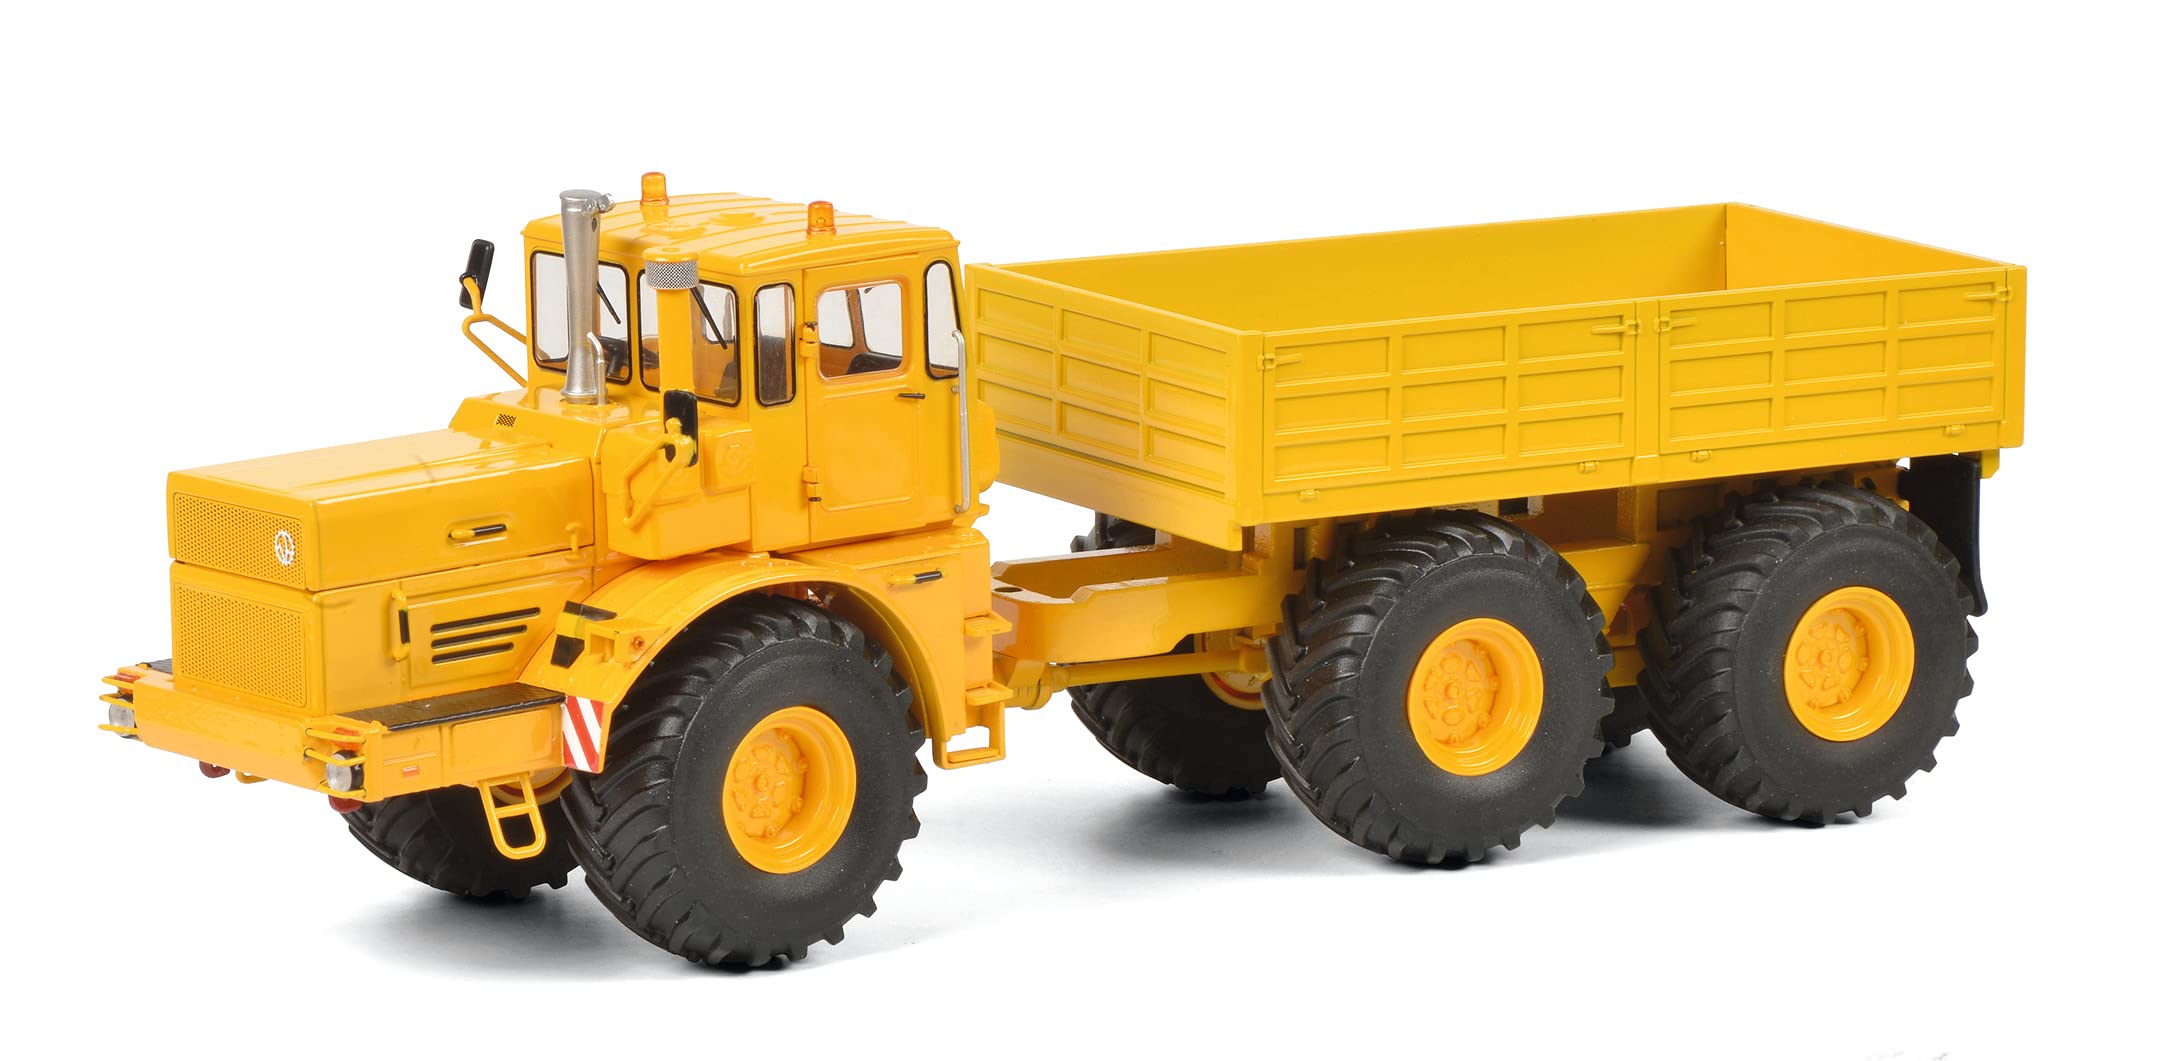 Schuco 450770800 Other License Kirovets K-700 T, Traktor mit Anhänger, Modellauto, 1:32, gelb